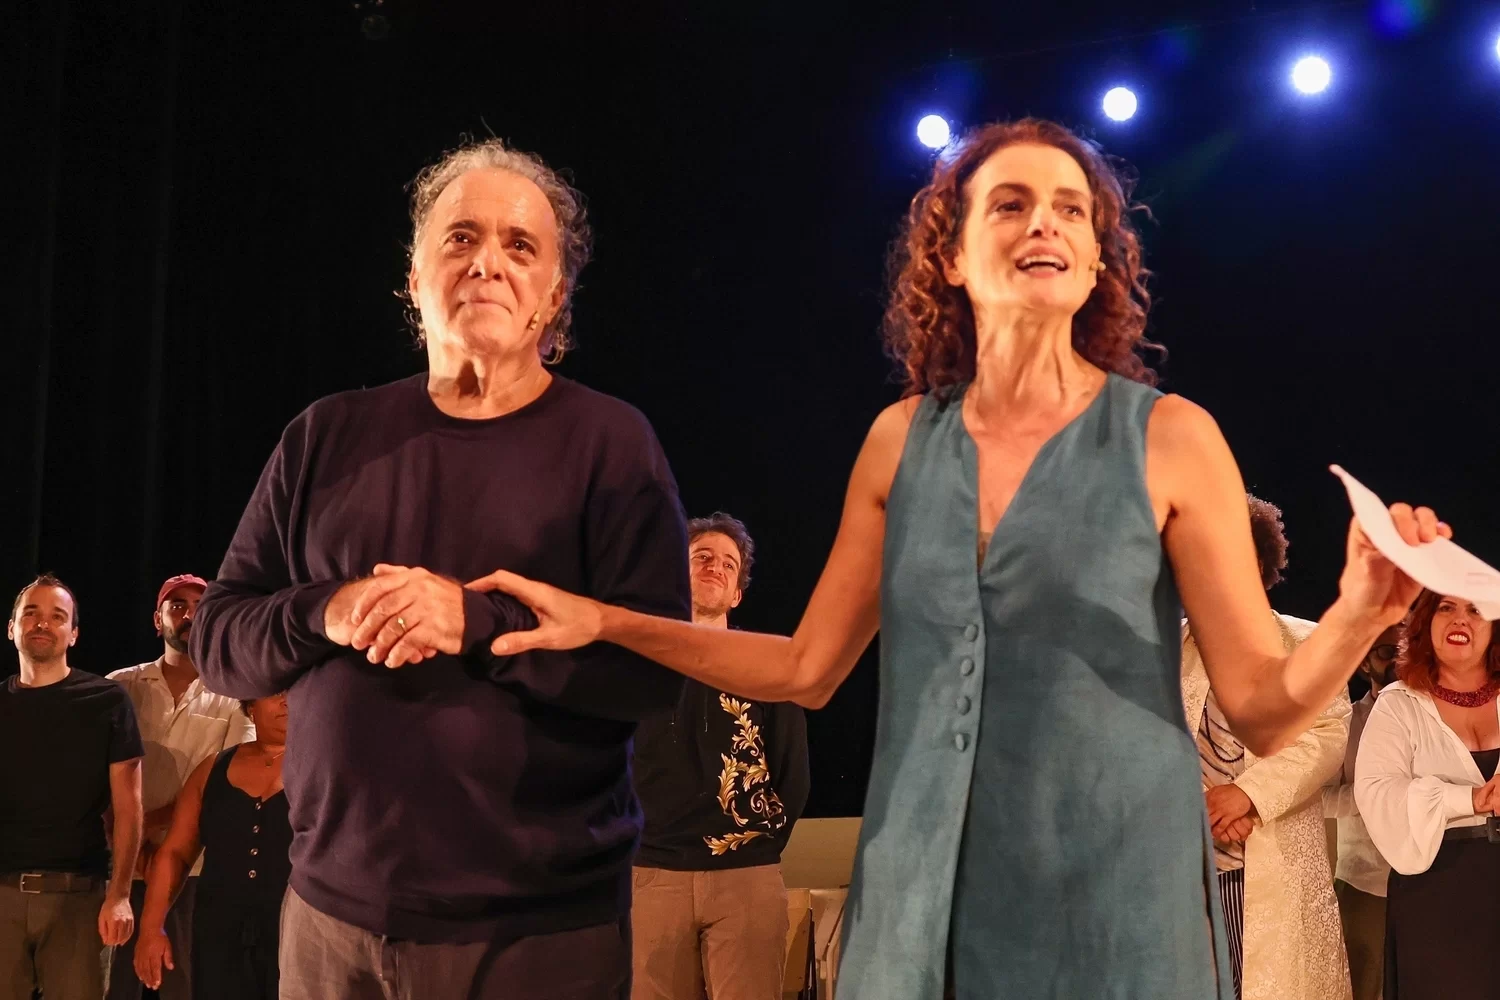 Tony Ramos ao lado de Denise Fraga em seu trabalho mais recente, a peça “O que só sabemos juntos”